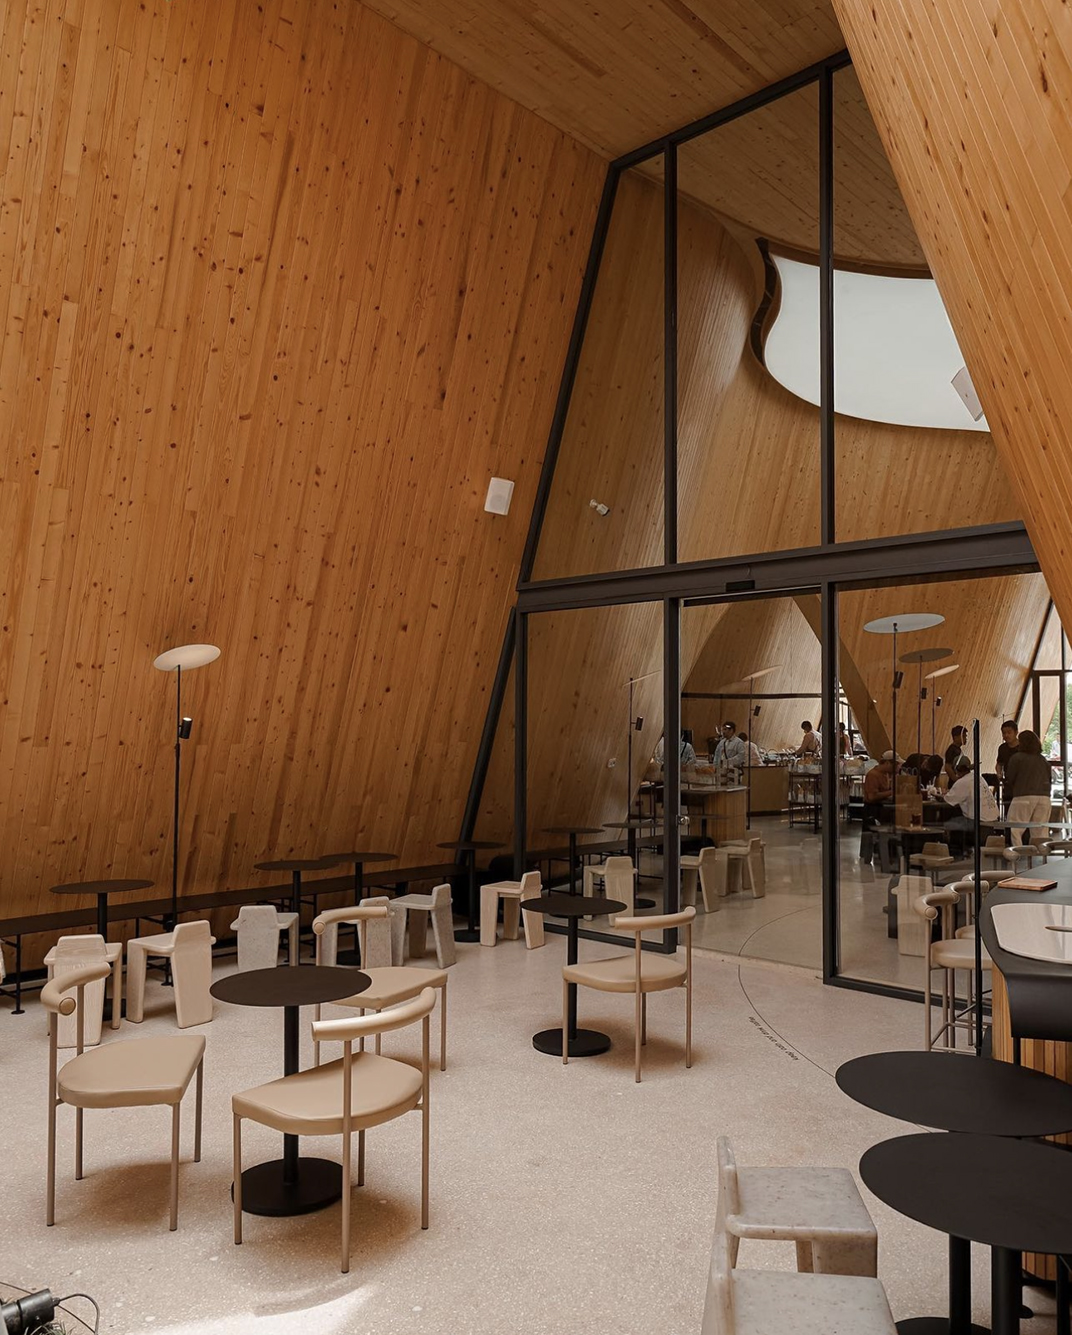 现代日式风格的咖啡馆建筑设计 泰国 北京 上海 珠海 广州 武汉 杭州 佛山 香港 澳门 logo设计 vi设计 空间设计